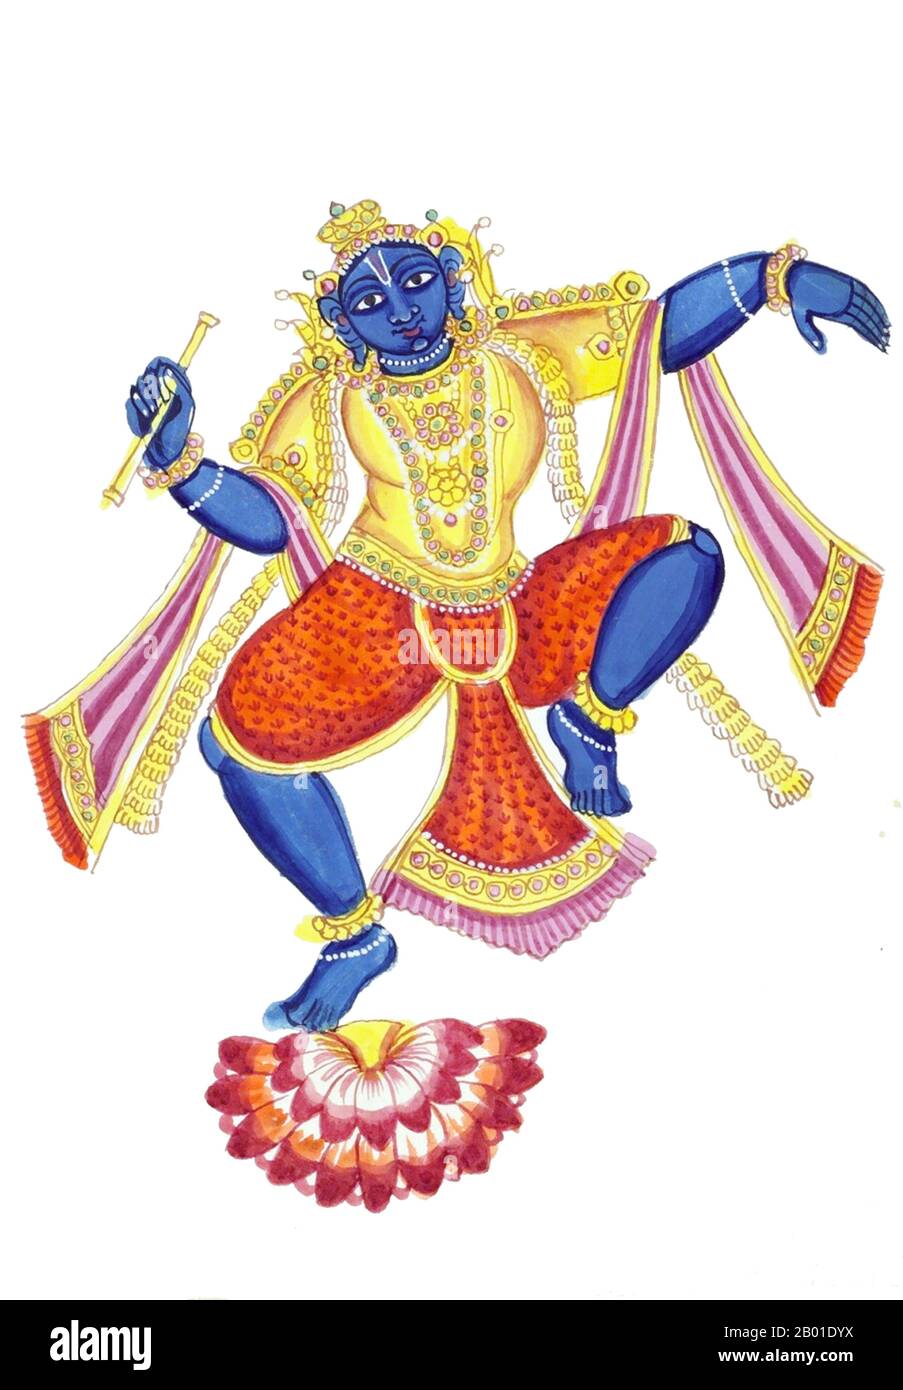 Inde: Krishna danse sur une fleur de lotus. Peinture aquarelle gouache, Tiruchirapalli (Trichy), Tamil Nadu, 1825. Krishna (littéralement 'dark, noir, bleu foncé') est une figure centrale de l'hindouisme et est traditionnellement attribuée à la paternité de la Bhagavad Gita. Il est un Avatar de Vishnu et considéré dans certaines traditions monothéistes comme l'être Suprême. Krishna est identifié comme un individu historique qui a participé aux événements du Mahābhārata. Krishna est souvent décrit comme un bébé ou un jeune garçon jouant une flûte comme dans la Bhagavata Purana, ou comme un jeune prince donnant la direction. Banque D'Images